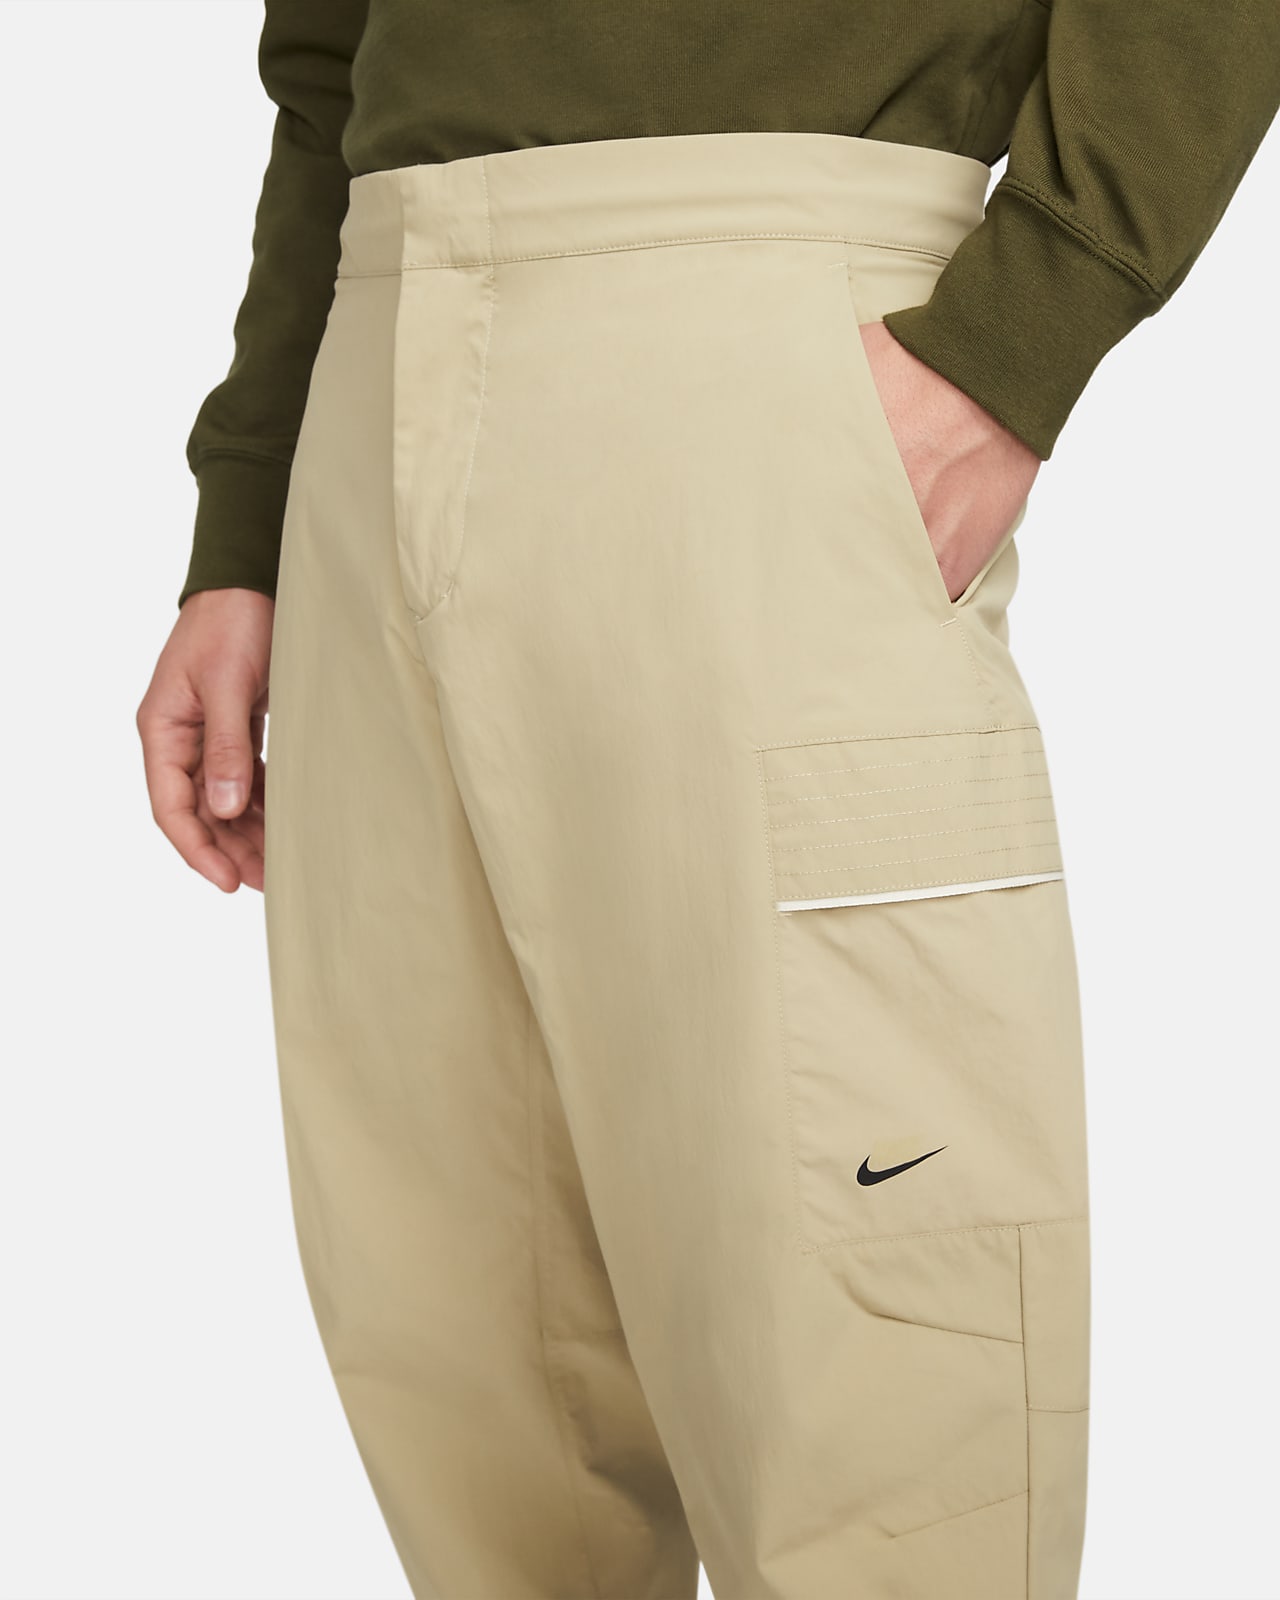 Sportswear Pants. Essentials Utility Style Nike Men\'s